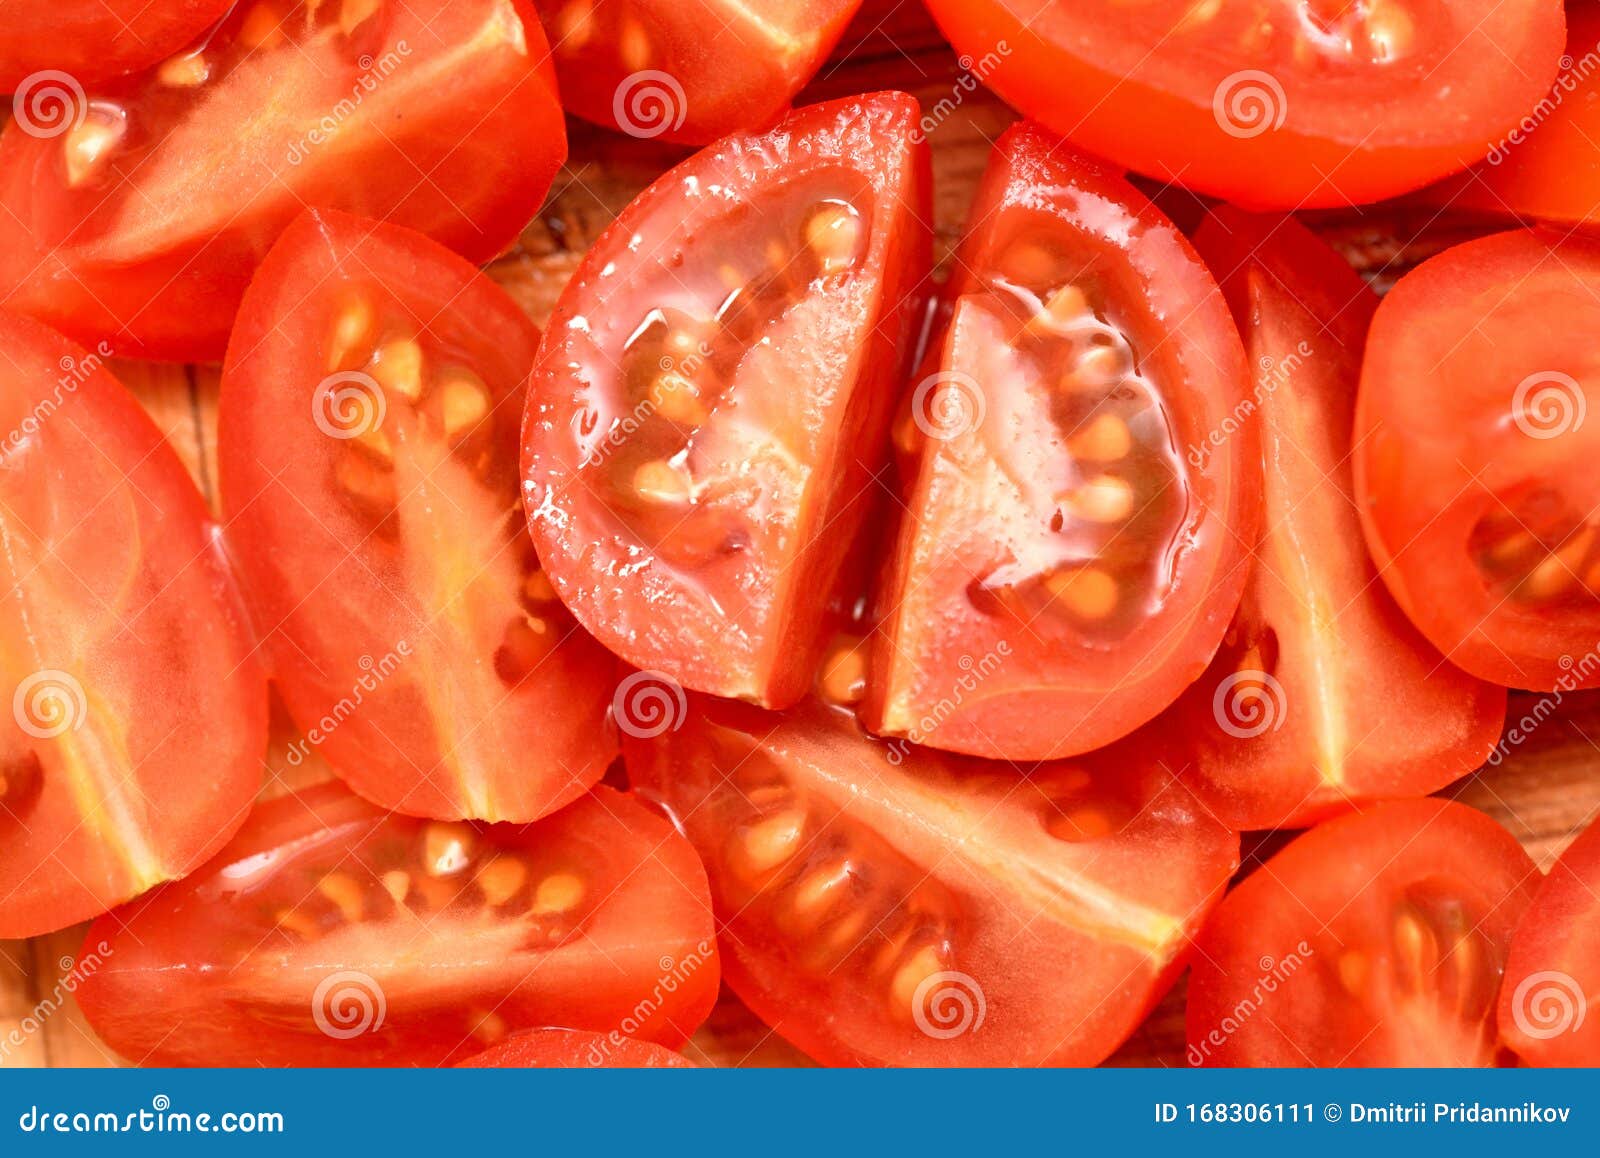 厨师把西红柿切成块 库存照片. 图片 包括有 刀子, 有机, 烹调, 食物, 新鲜, 切片, 主厨, 生活方式 - 217635954